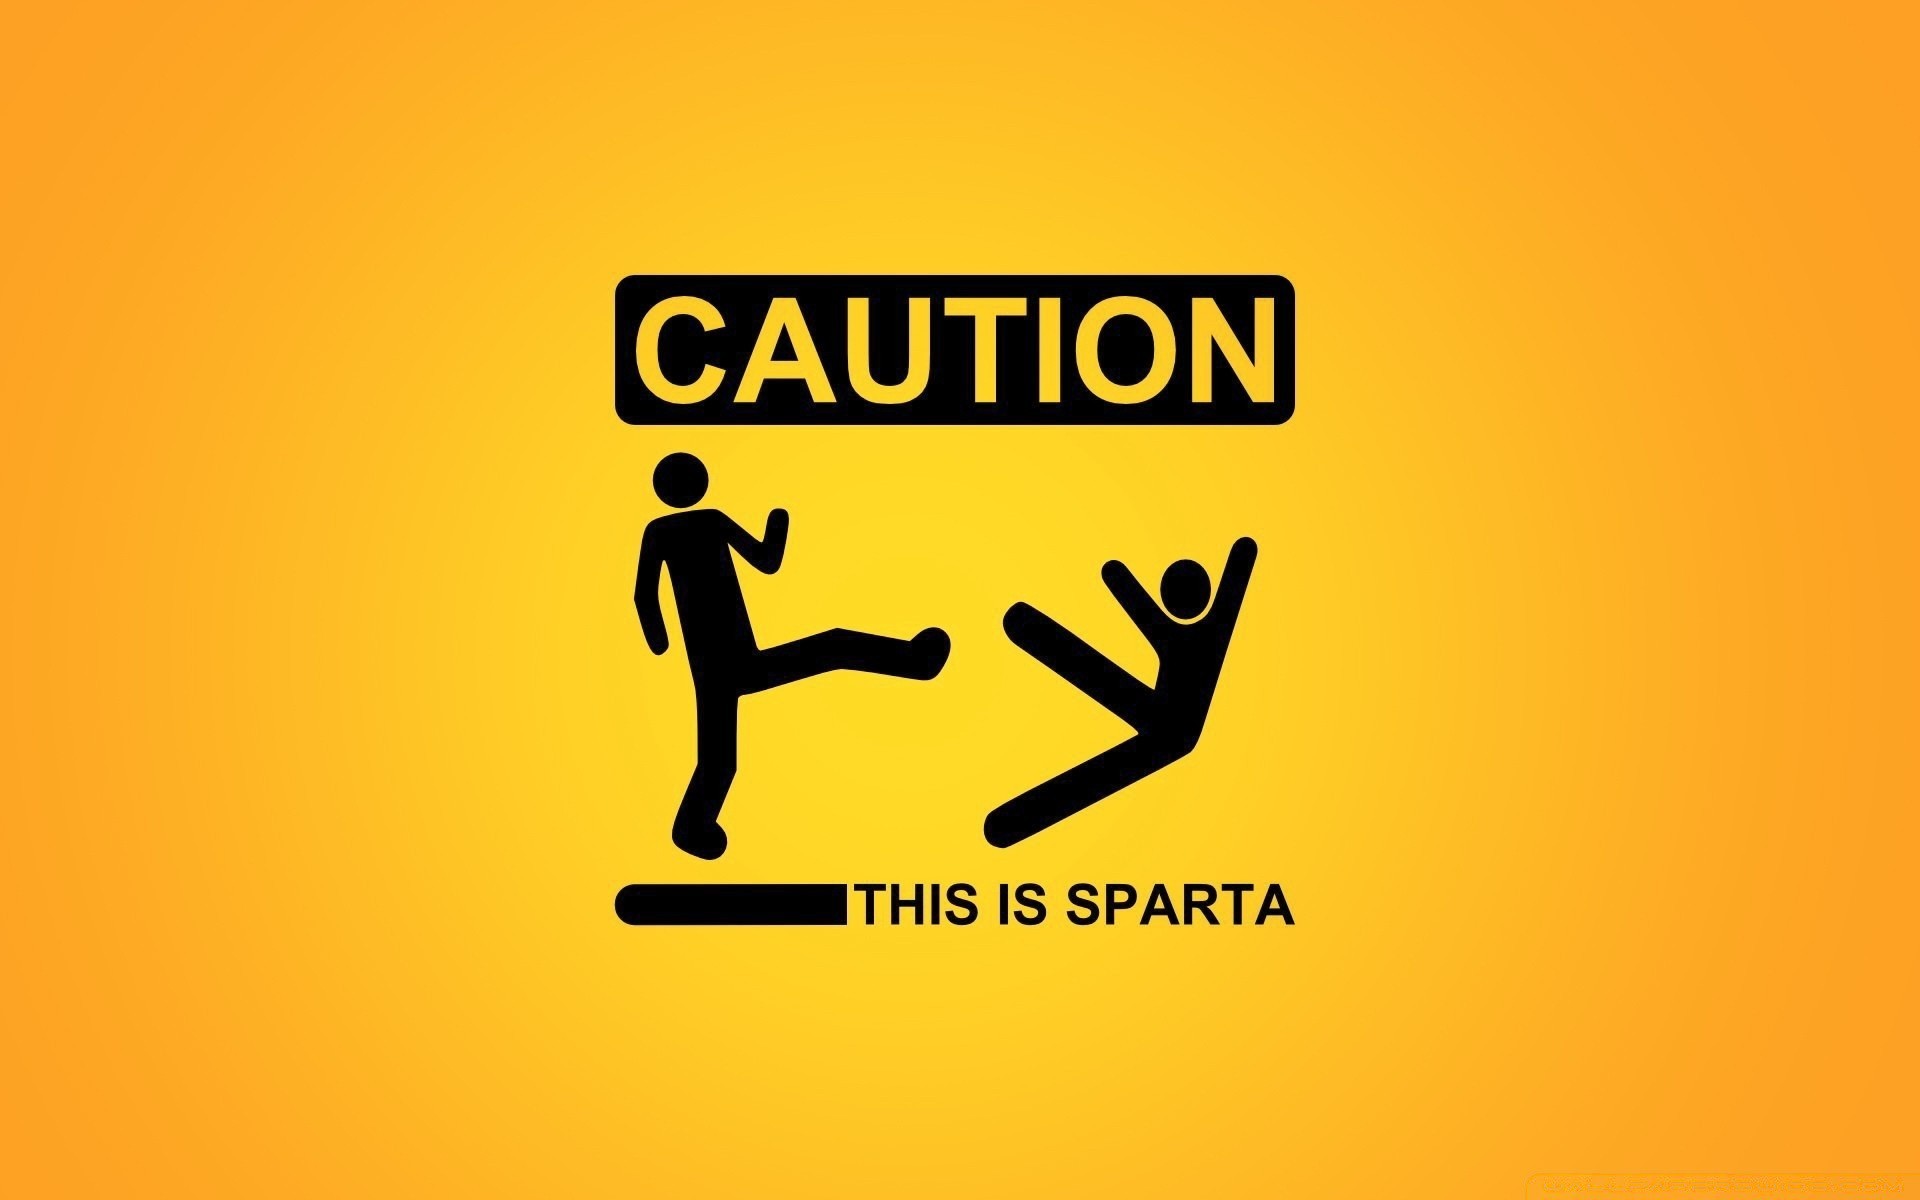 humor and satire desktop symbol business sign illustration